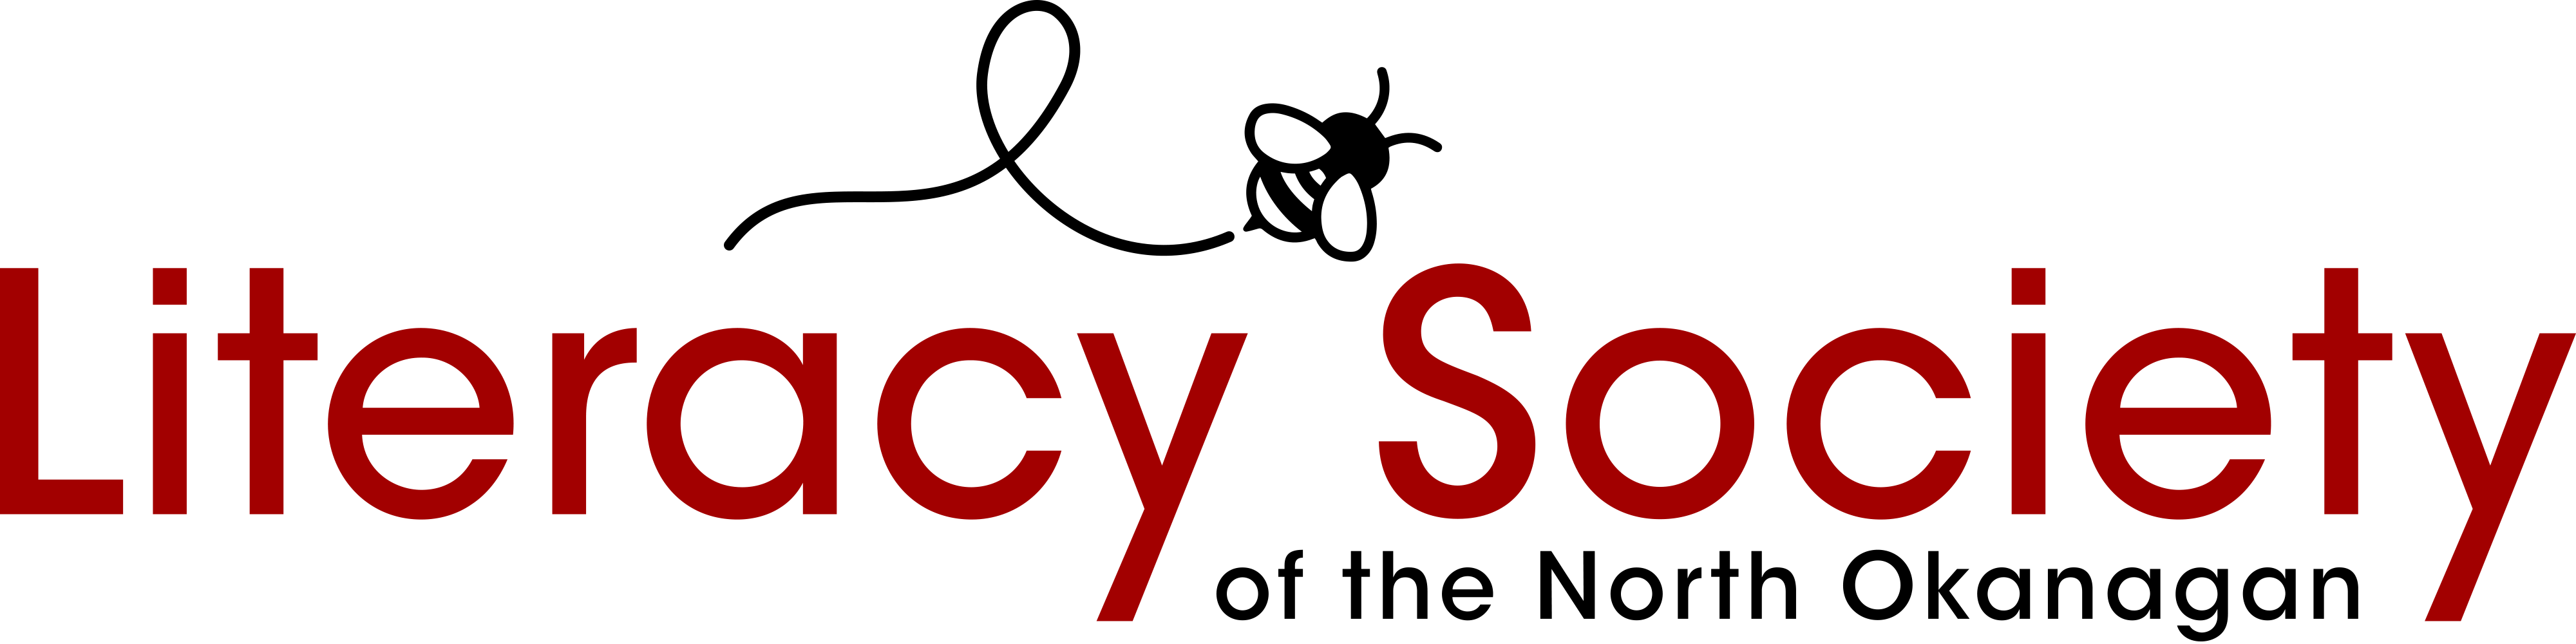 Literacy Society of the North Okanagan logo